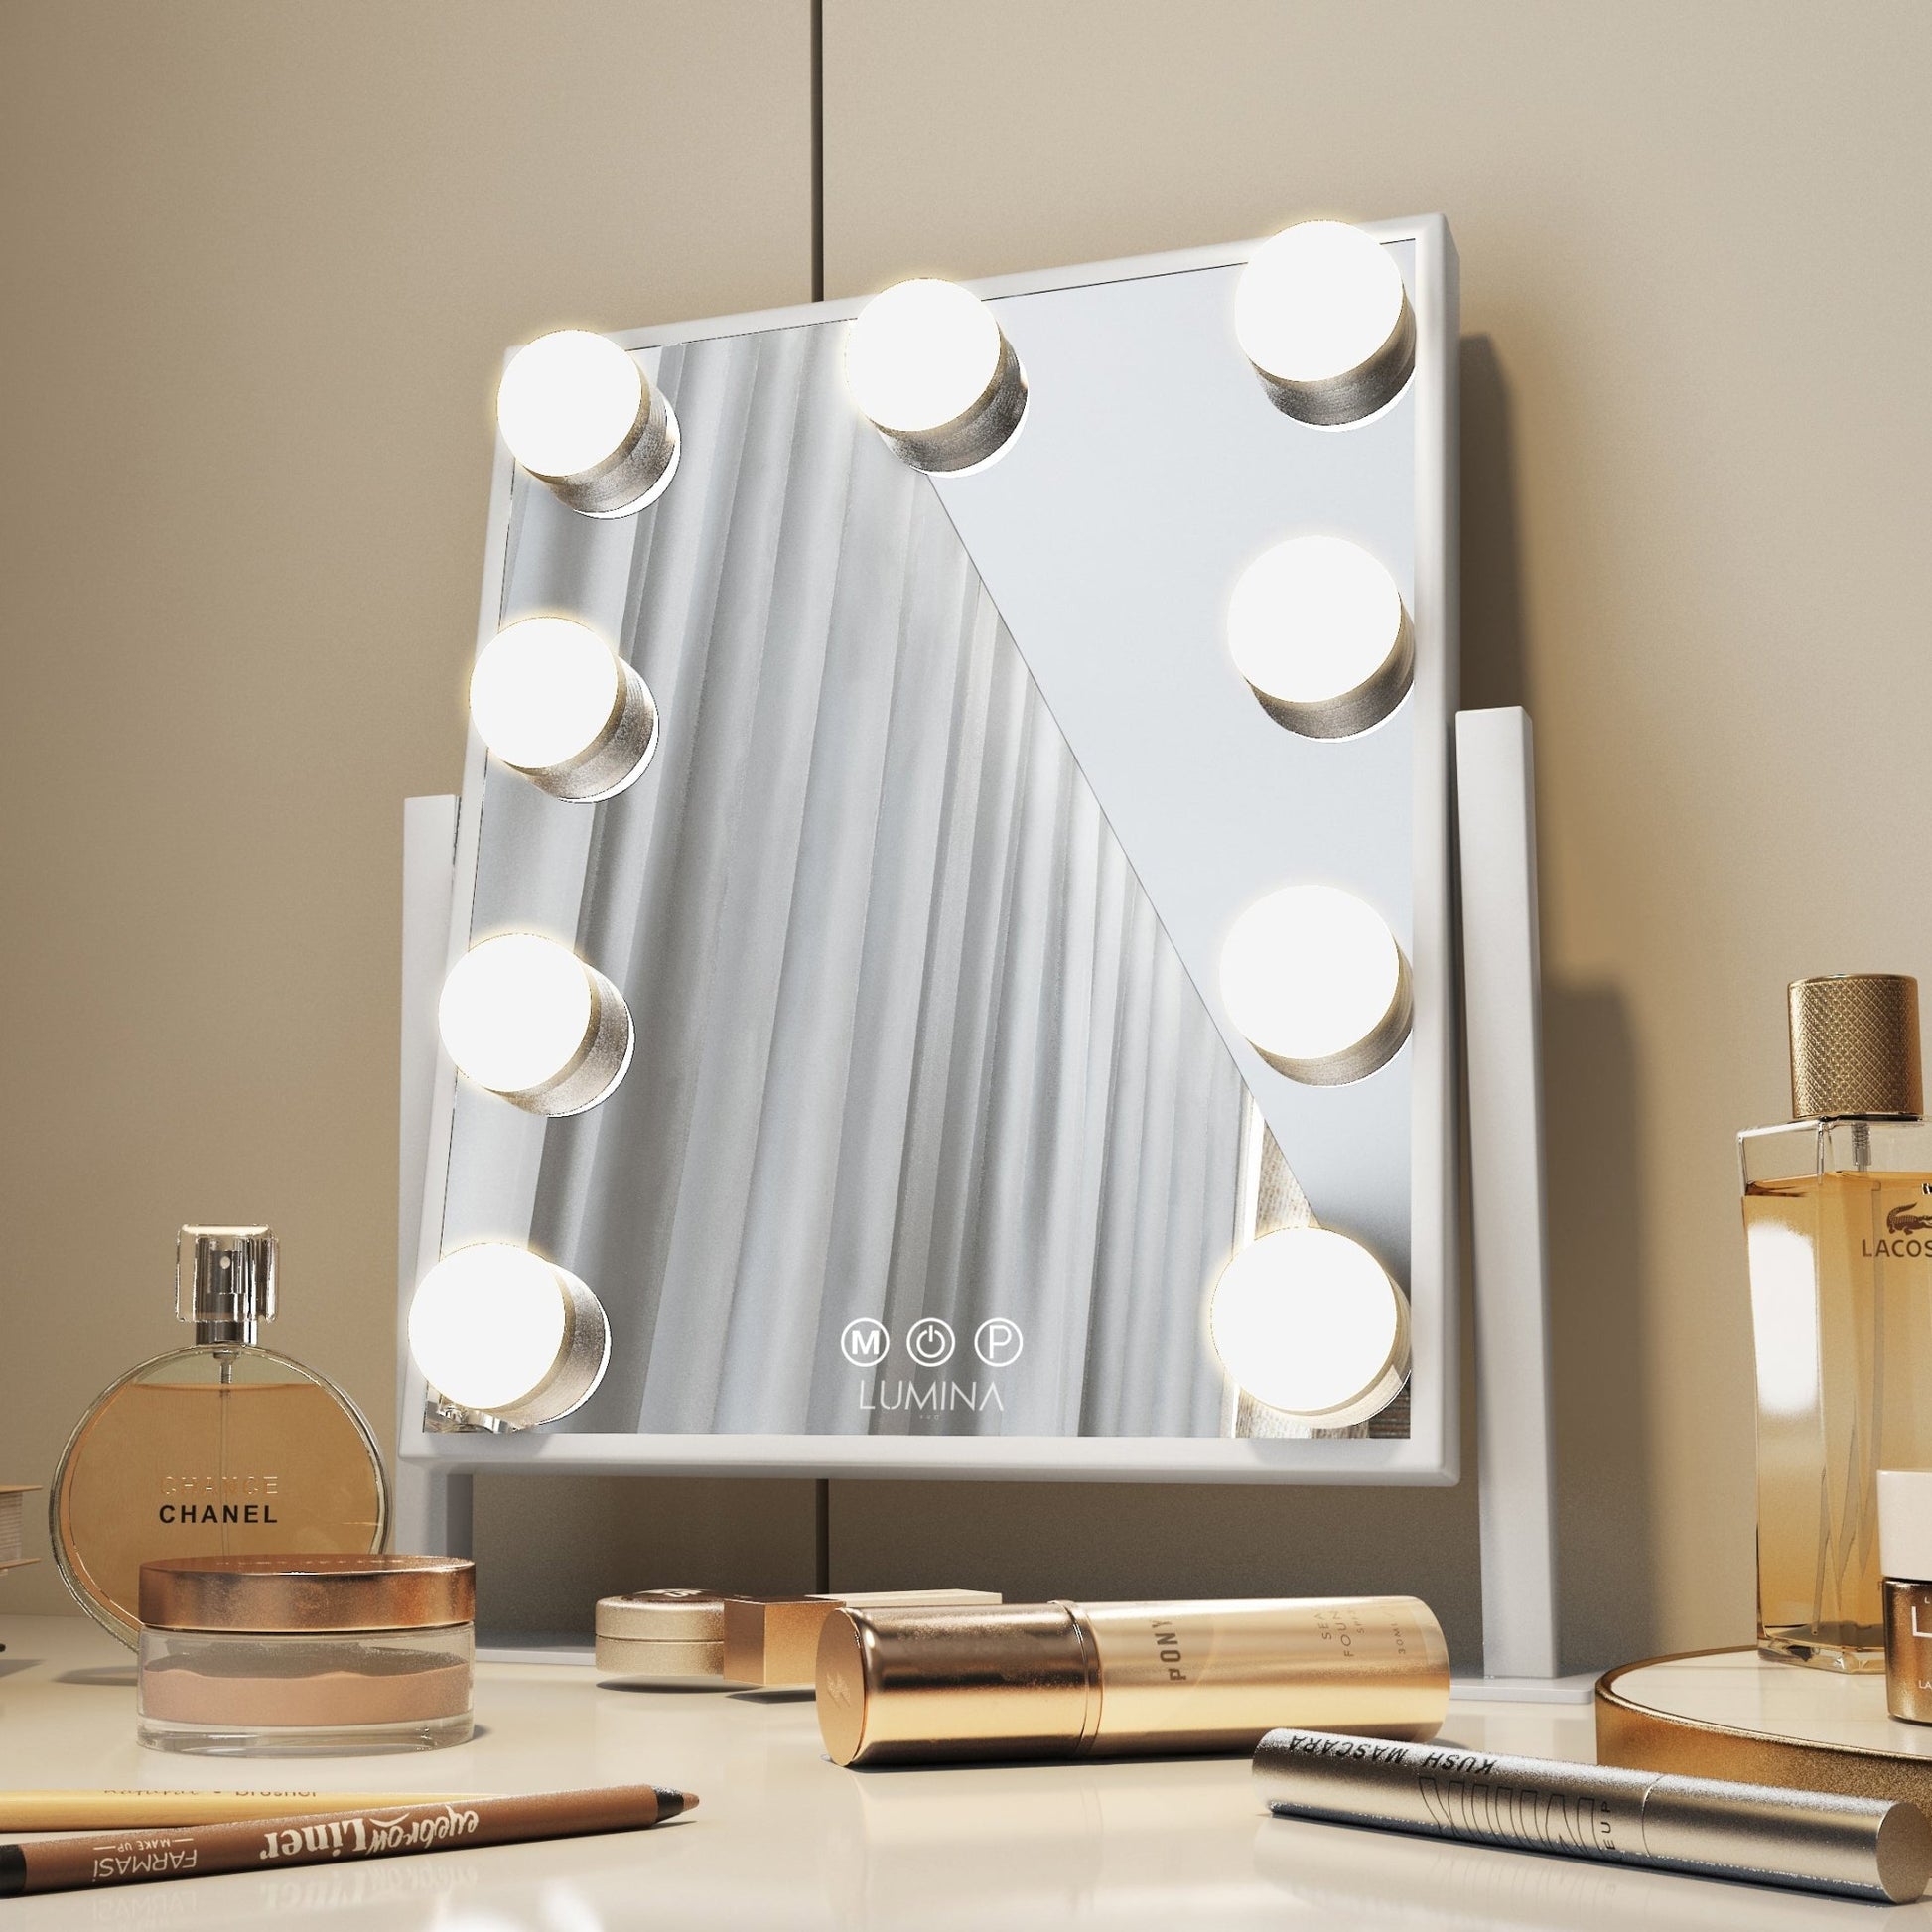 Hollywood Table Top Makeup Mirror - Lumina Pro USA -